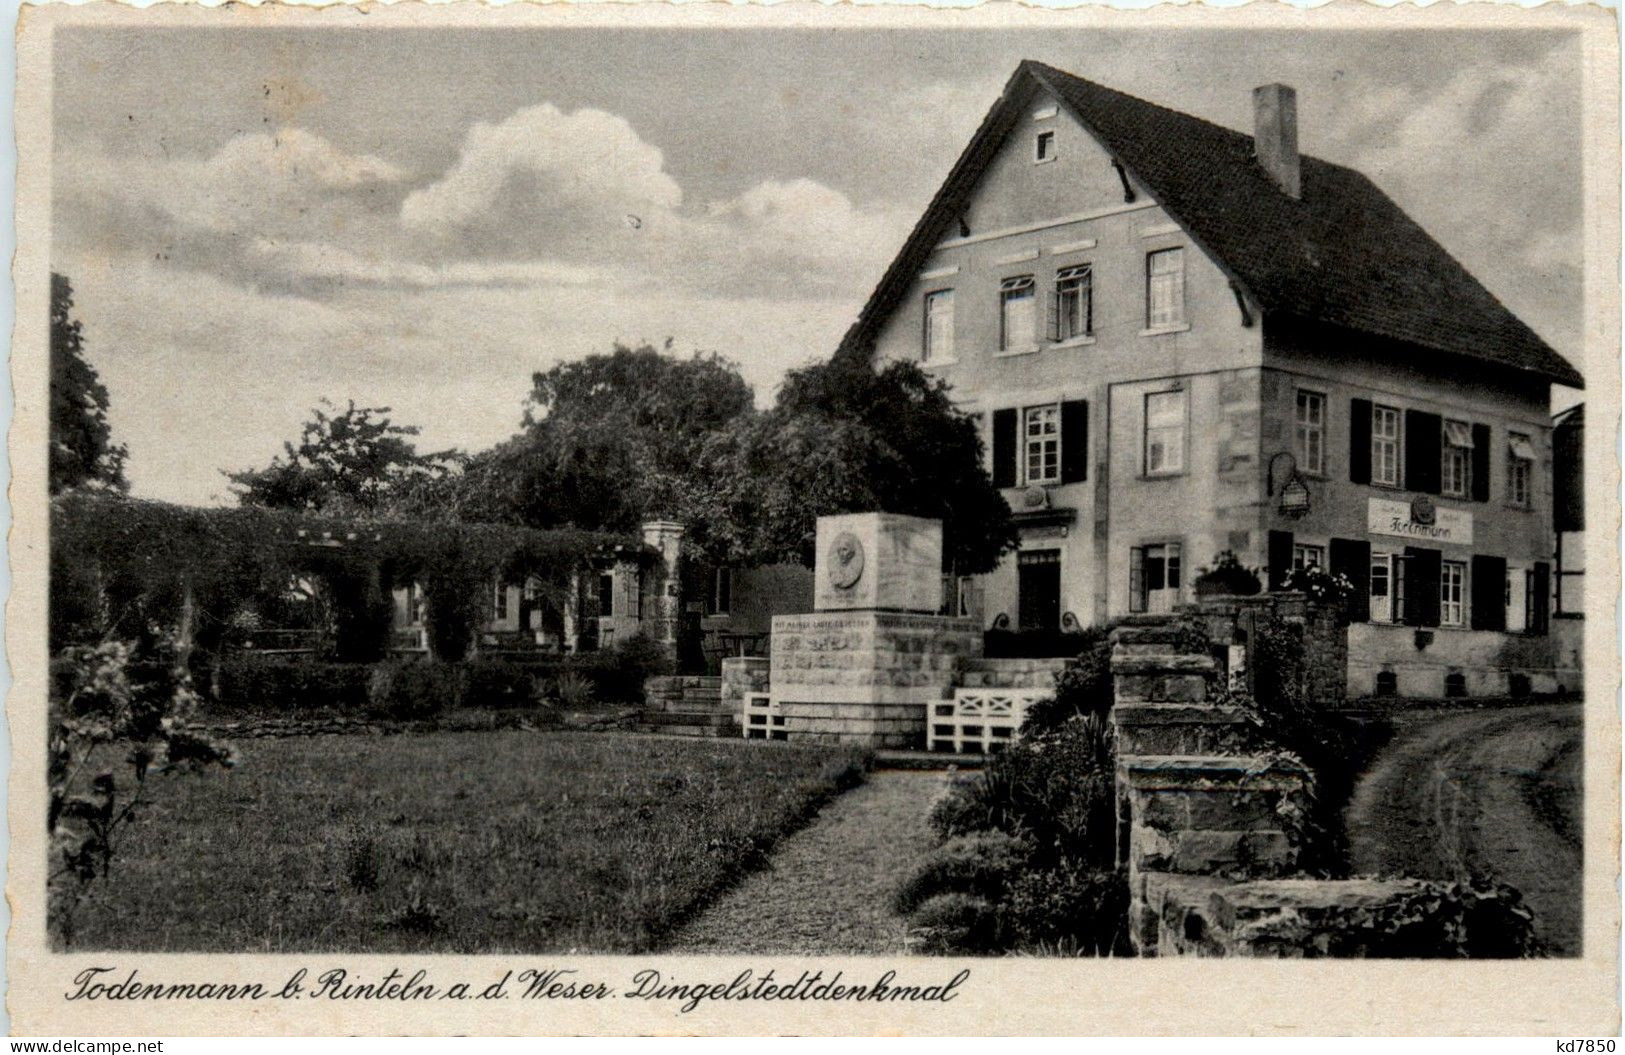 Todenmann Bei Rinteln - Dingelstedtdenkmal - Rinteln